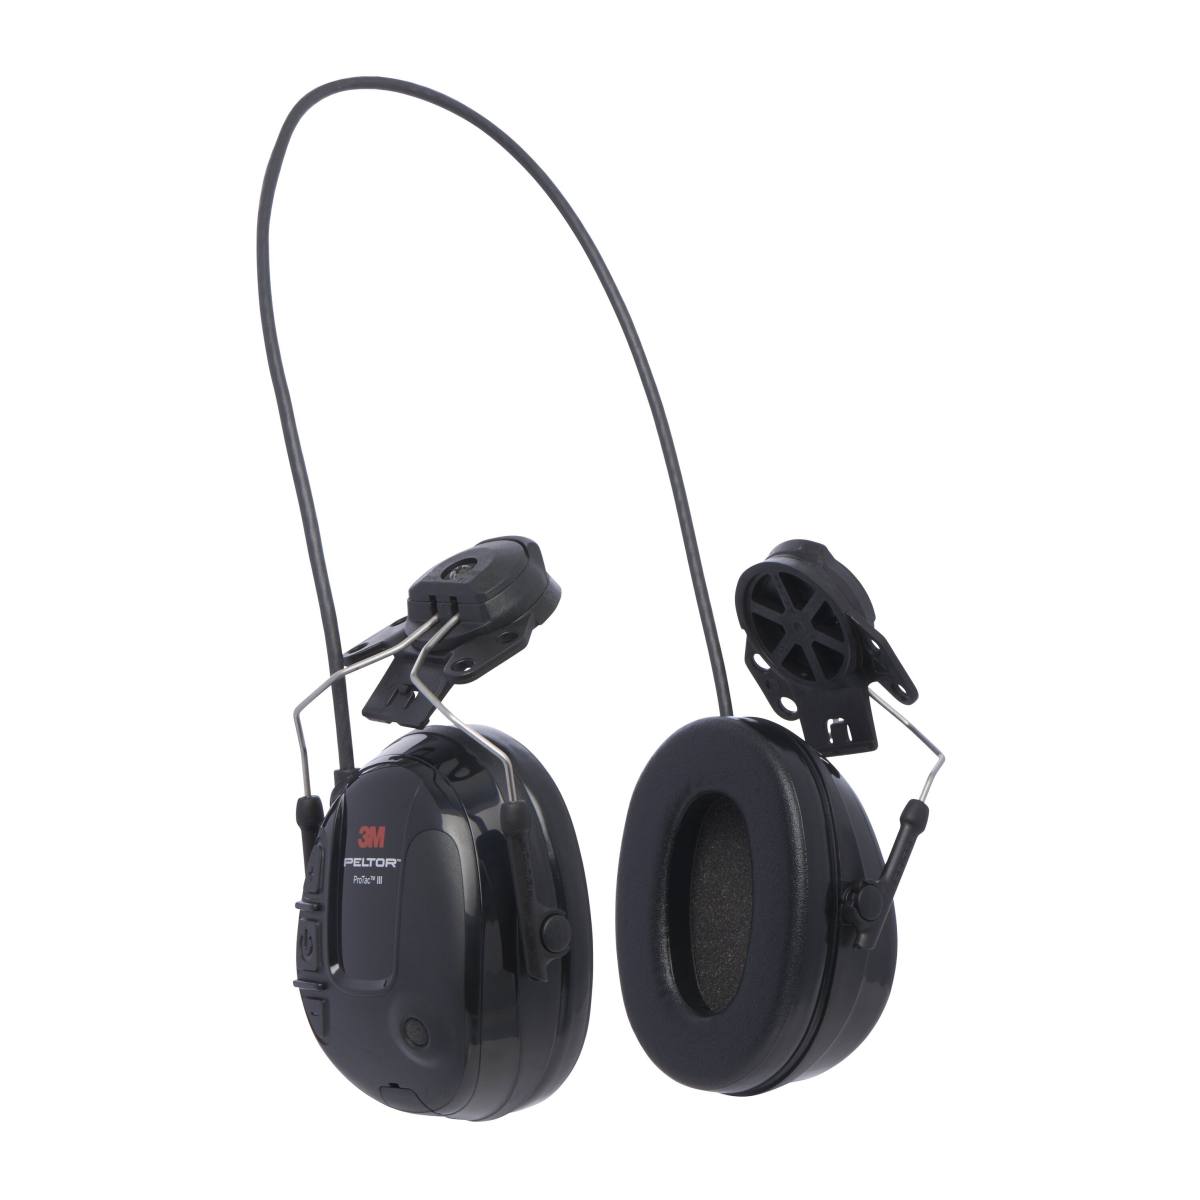 3M Peltor ProTac III Slim gehoorbeschermingsheadset, zwart, helmuitvoering, met actieve, niveauafhankelijke dempingstechnologie voor de waarneming van omgevingsgeluid, SNR = 25 dB, zwart